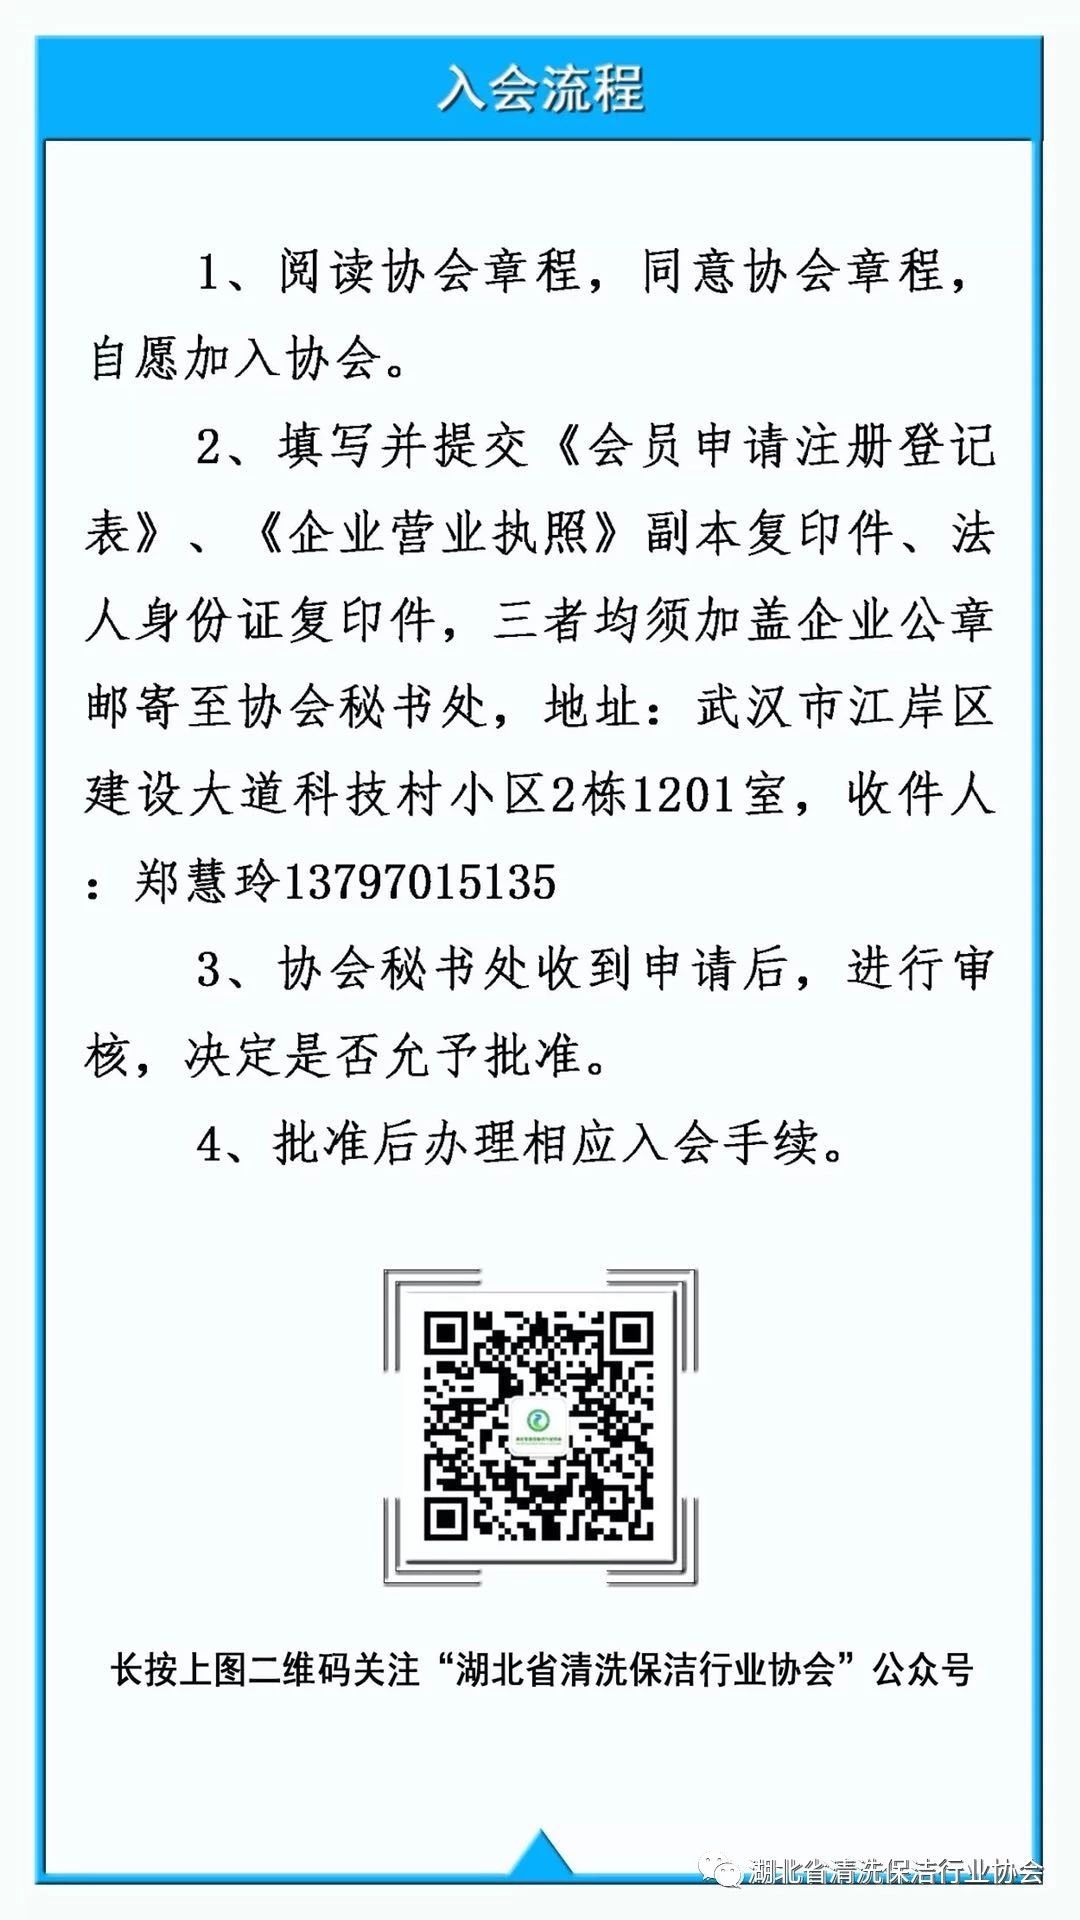 湖北省清洗保洁行业协会第一部地方标准《保洁服务通则》颁布实施14.jpg